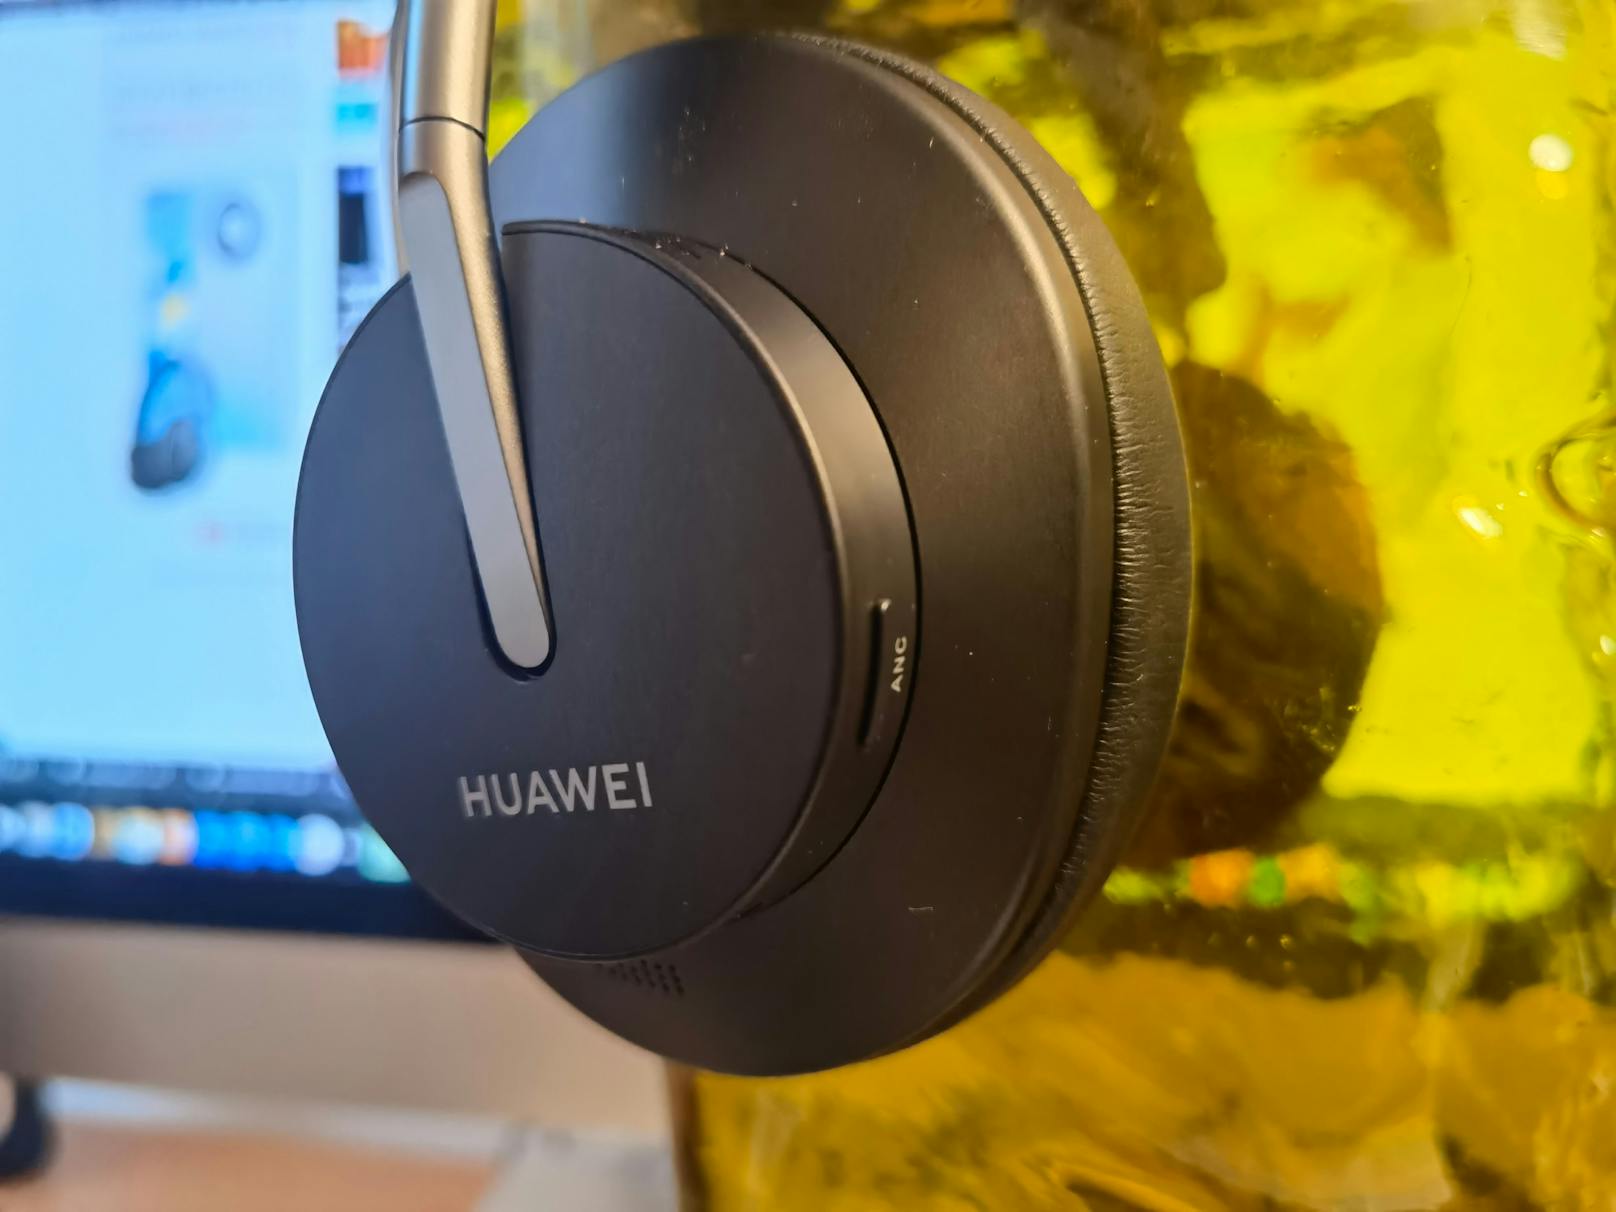 In Österreich gibt es die neuen Over-Ear-Kopfhörer Huawei FreeBuds Studio ab sofort um 279 Euro in der Farbe Schwarz.